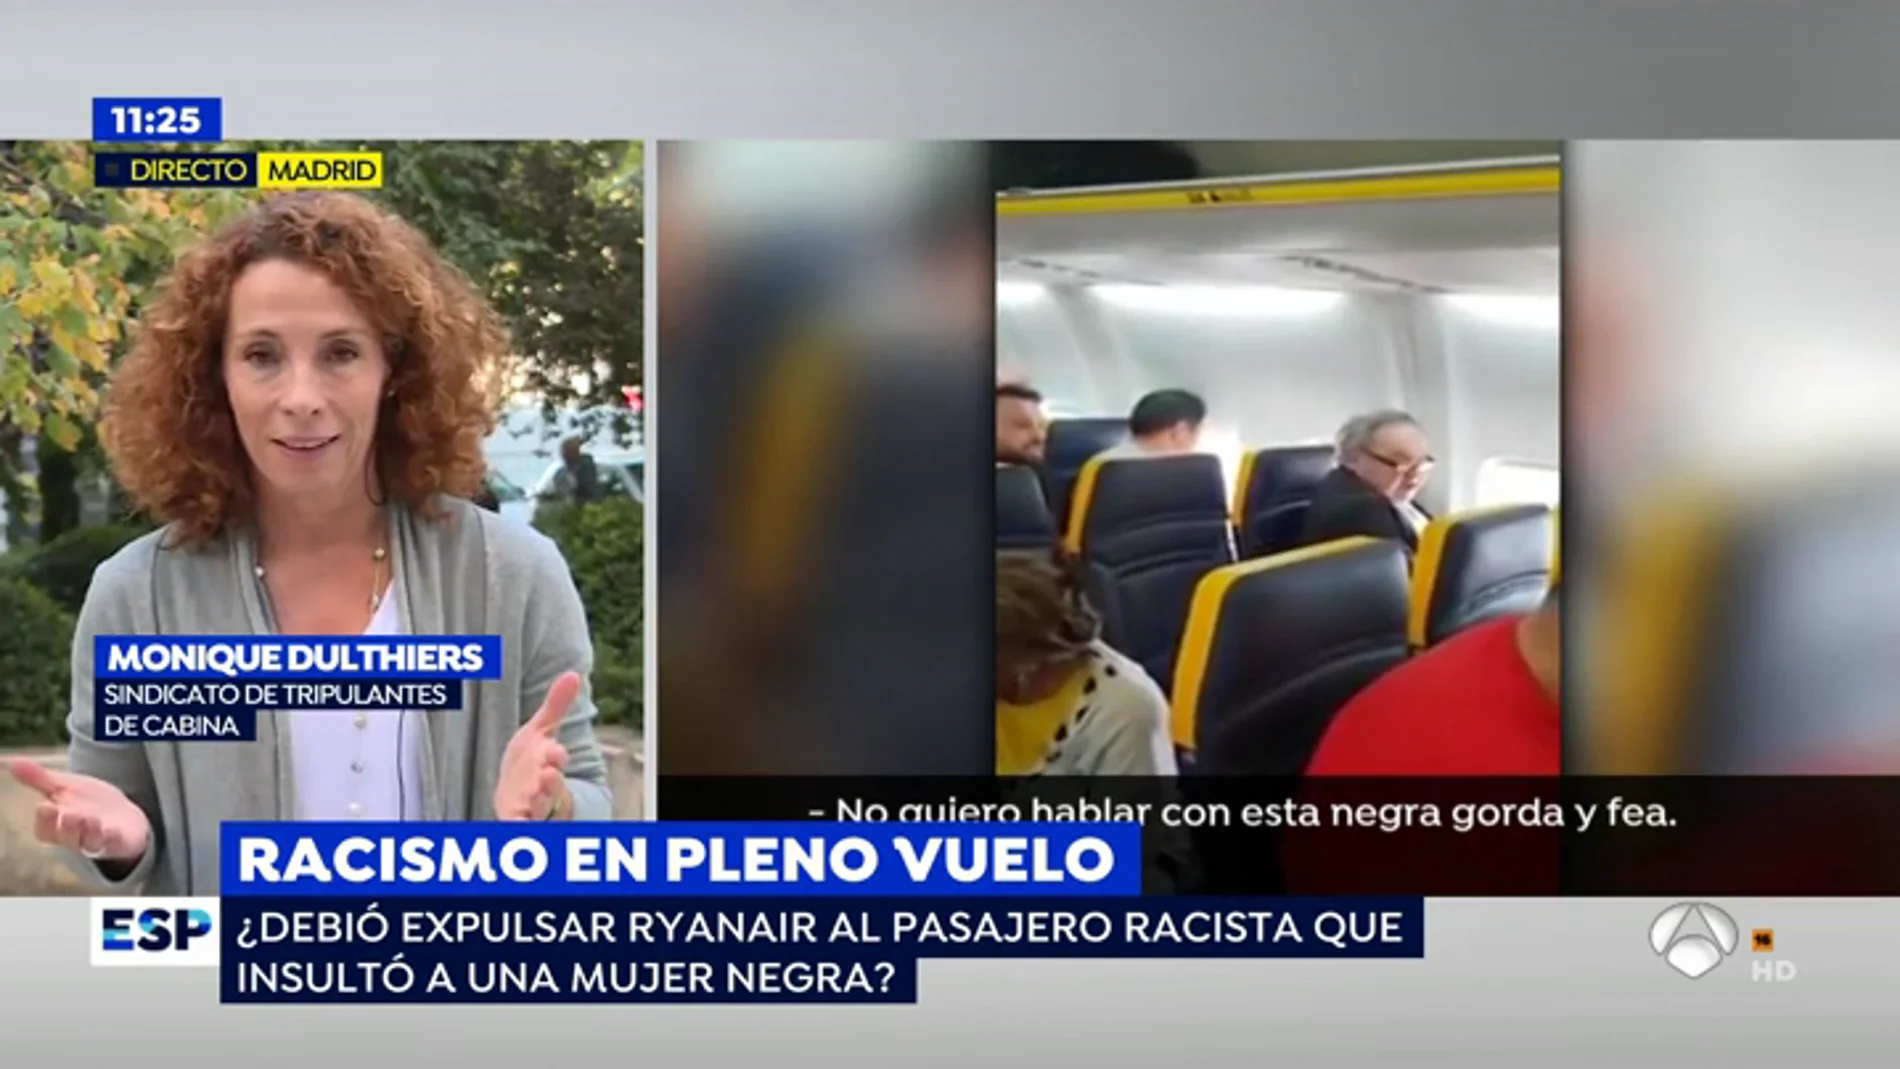 La Representante del Sindicato de Tripulantes de Cabina explica la actuación de Ryanair: "La compañía trabaja con mucha presión para cumplir sus horarios y no querían retrasar el vuelo"